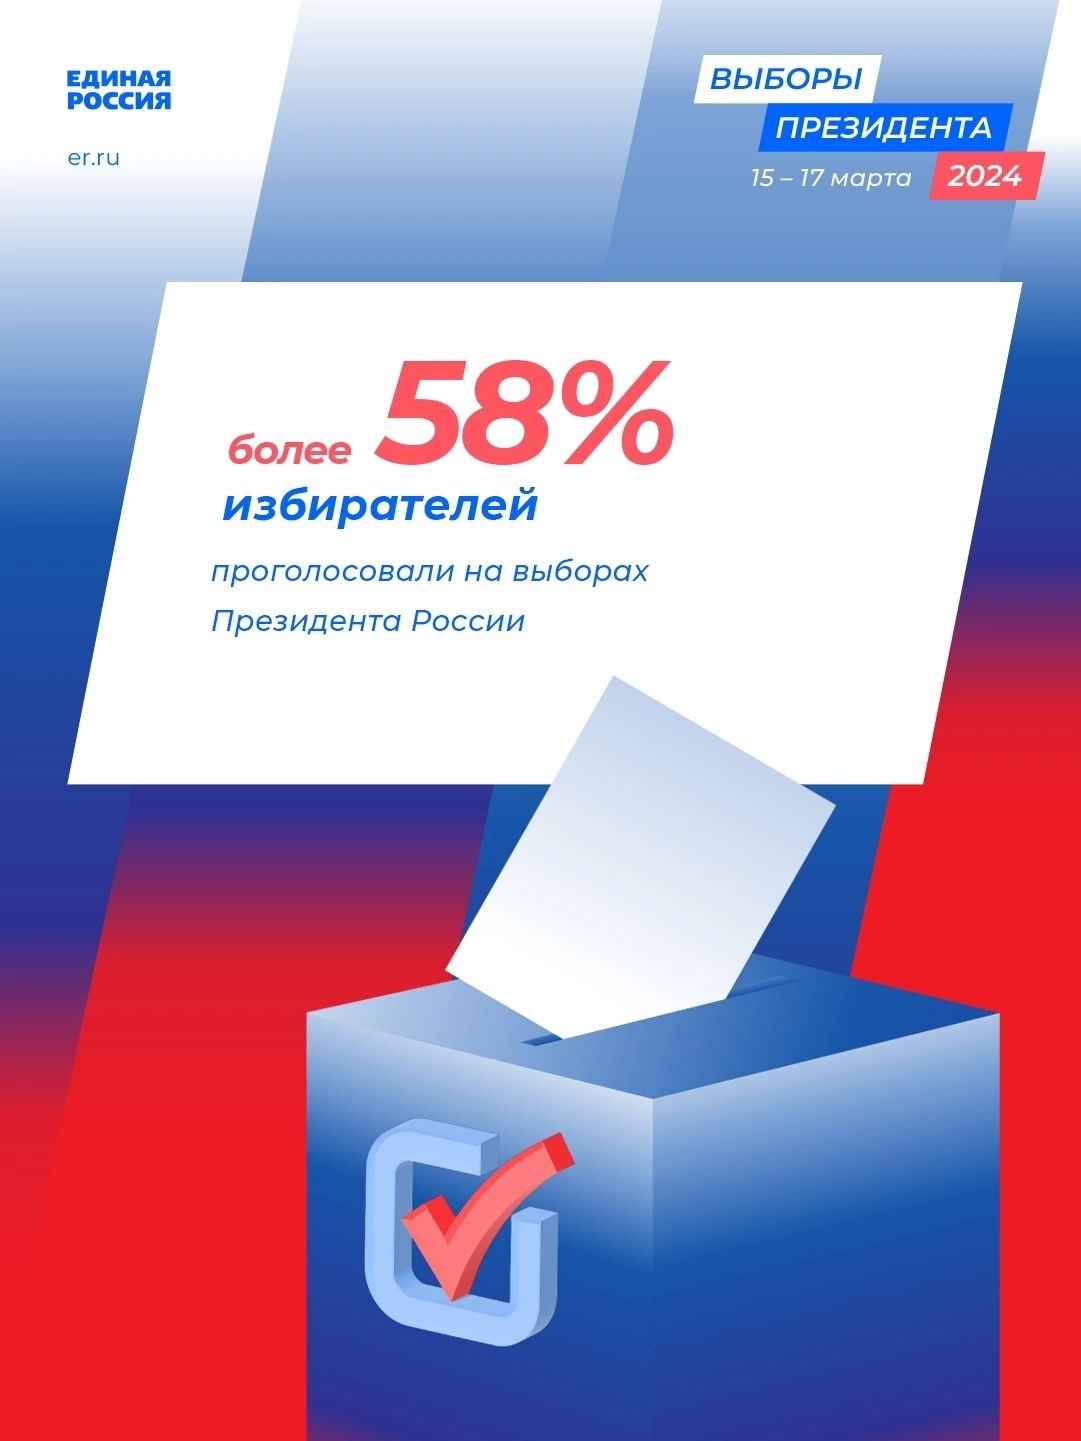 Явка на выборах Президента Российской Федерации в целом по стране по состоянию на 16 марта 23:00 по московскому времени превысила 58%. Об этом сообщили в Центральной избирательной комиссии РФ.